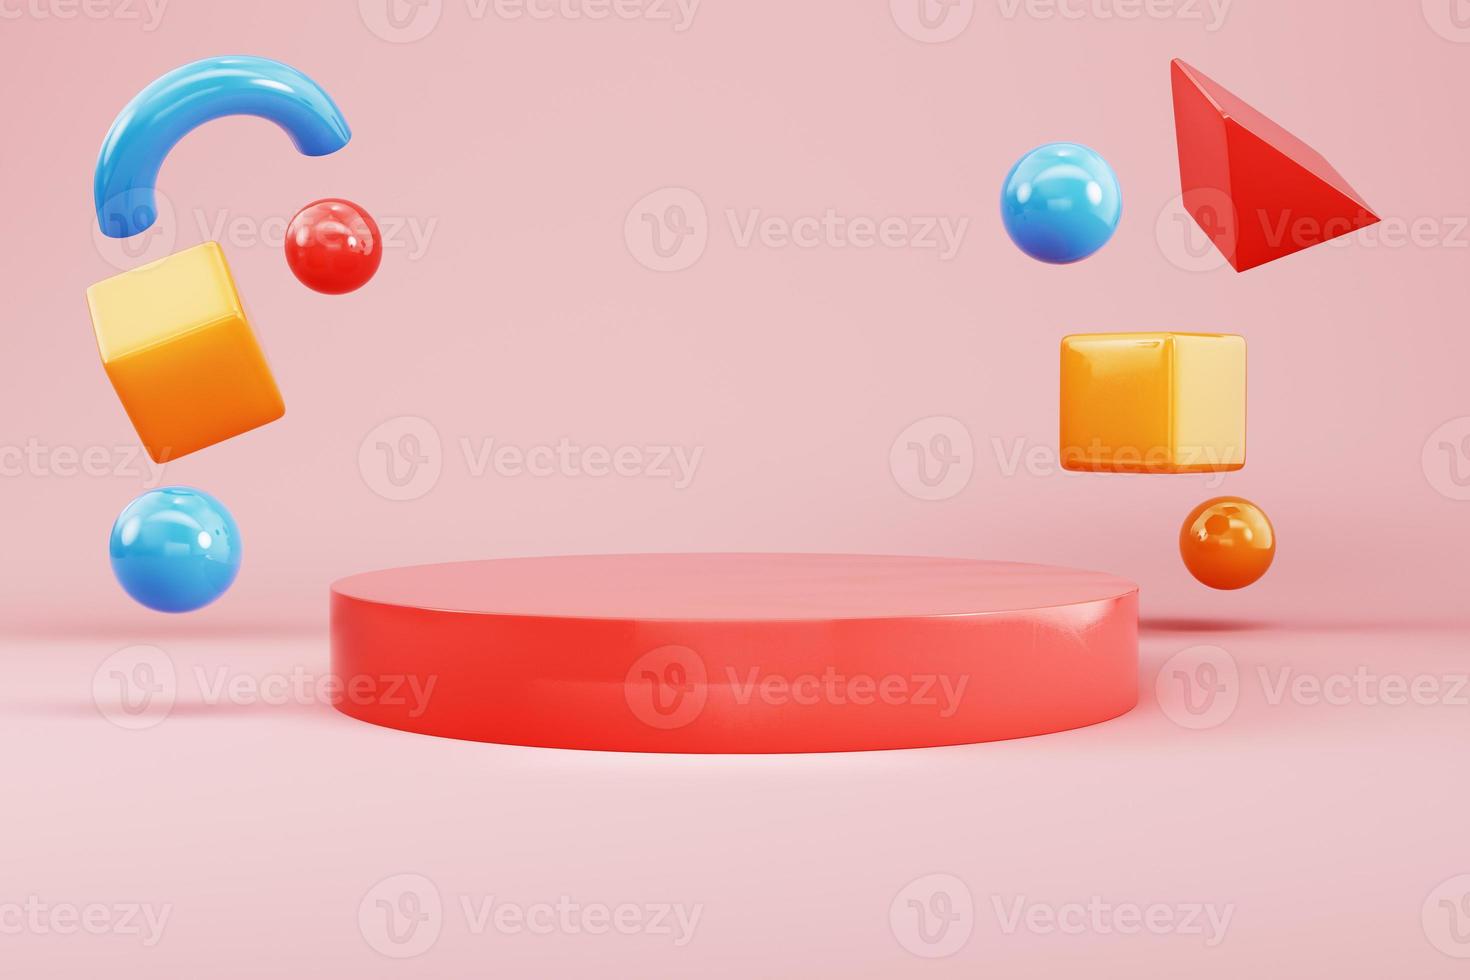 piedistallo cilindrico rosso con forme geometriche volanti astratte volanti su sfondo pastello per la visualizzazione del prodotto foto